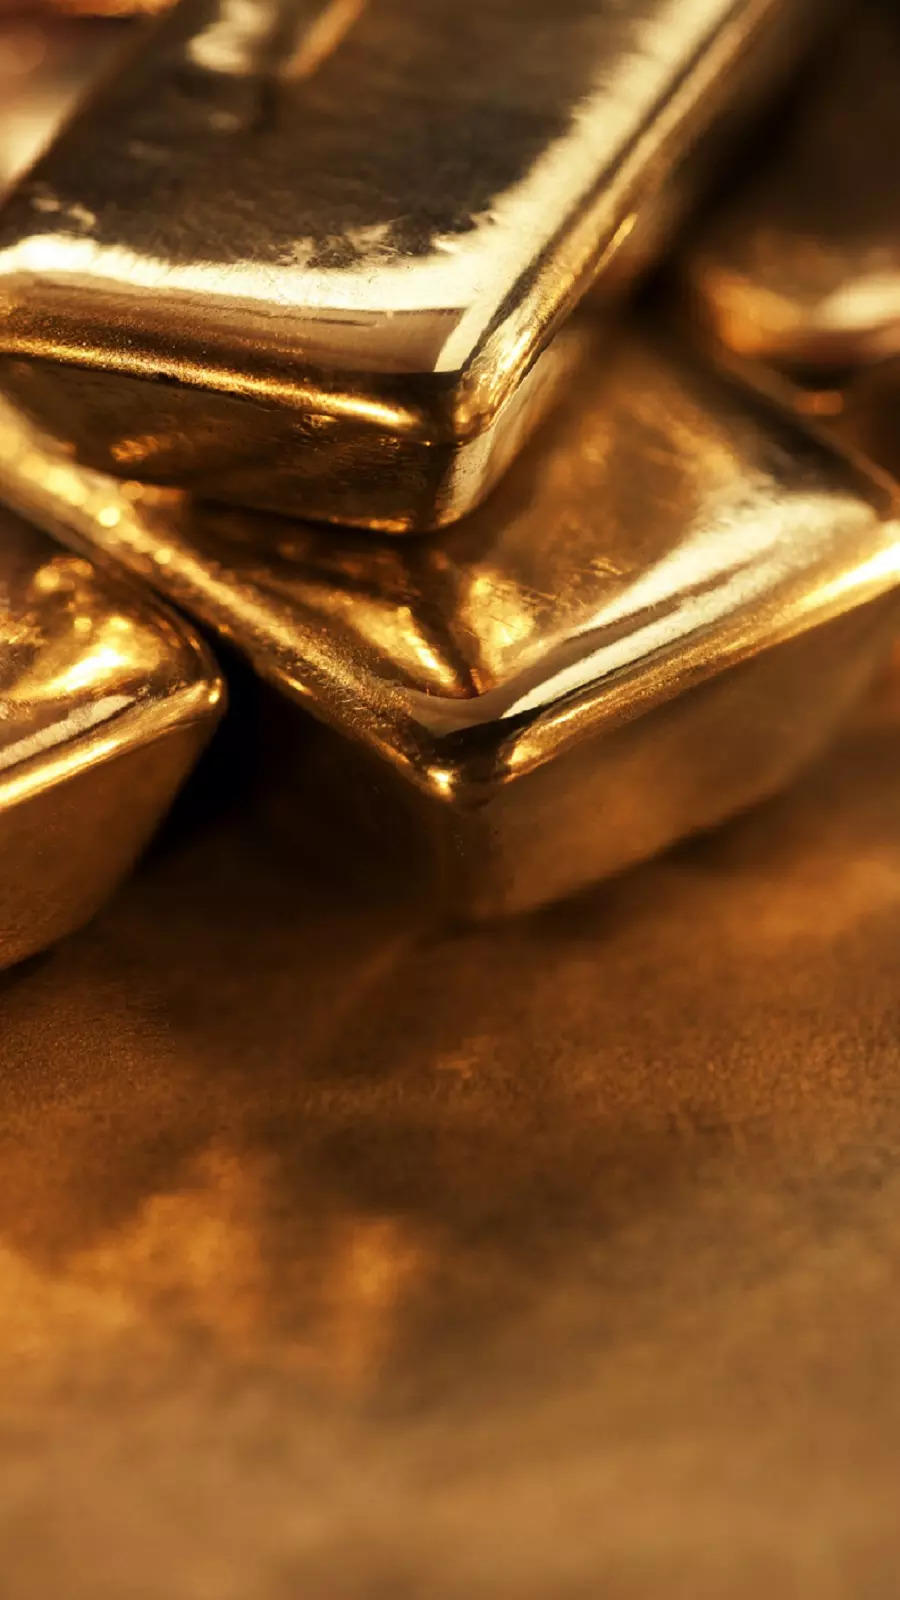 Trái phiếu vàng quốc gia (Sovereign Gold Bonds) là một lựa chọn đầu tư tuyệt vời để tăng cường sự bảo đảm tài chính vào thời điểm hiện tại. Với giá trị cố định và lợi suất hấp dẫn, bạn sẽ yên tâm về tương lai tài chính của mình và tận hưởng cuộc sống trong sự thoải mái.